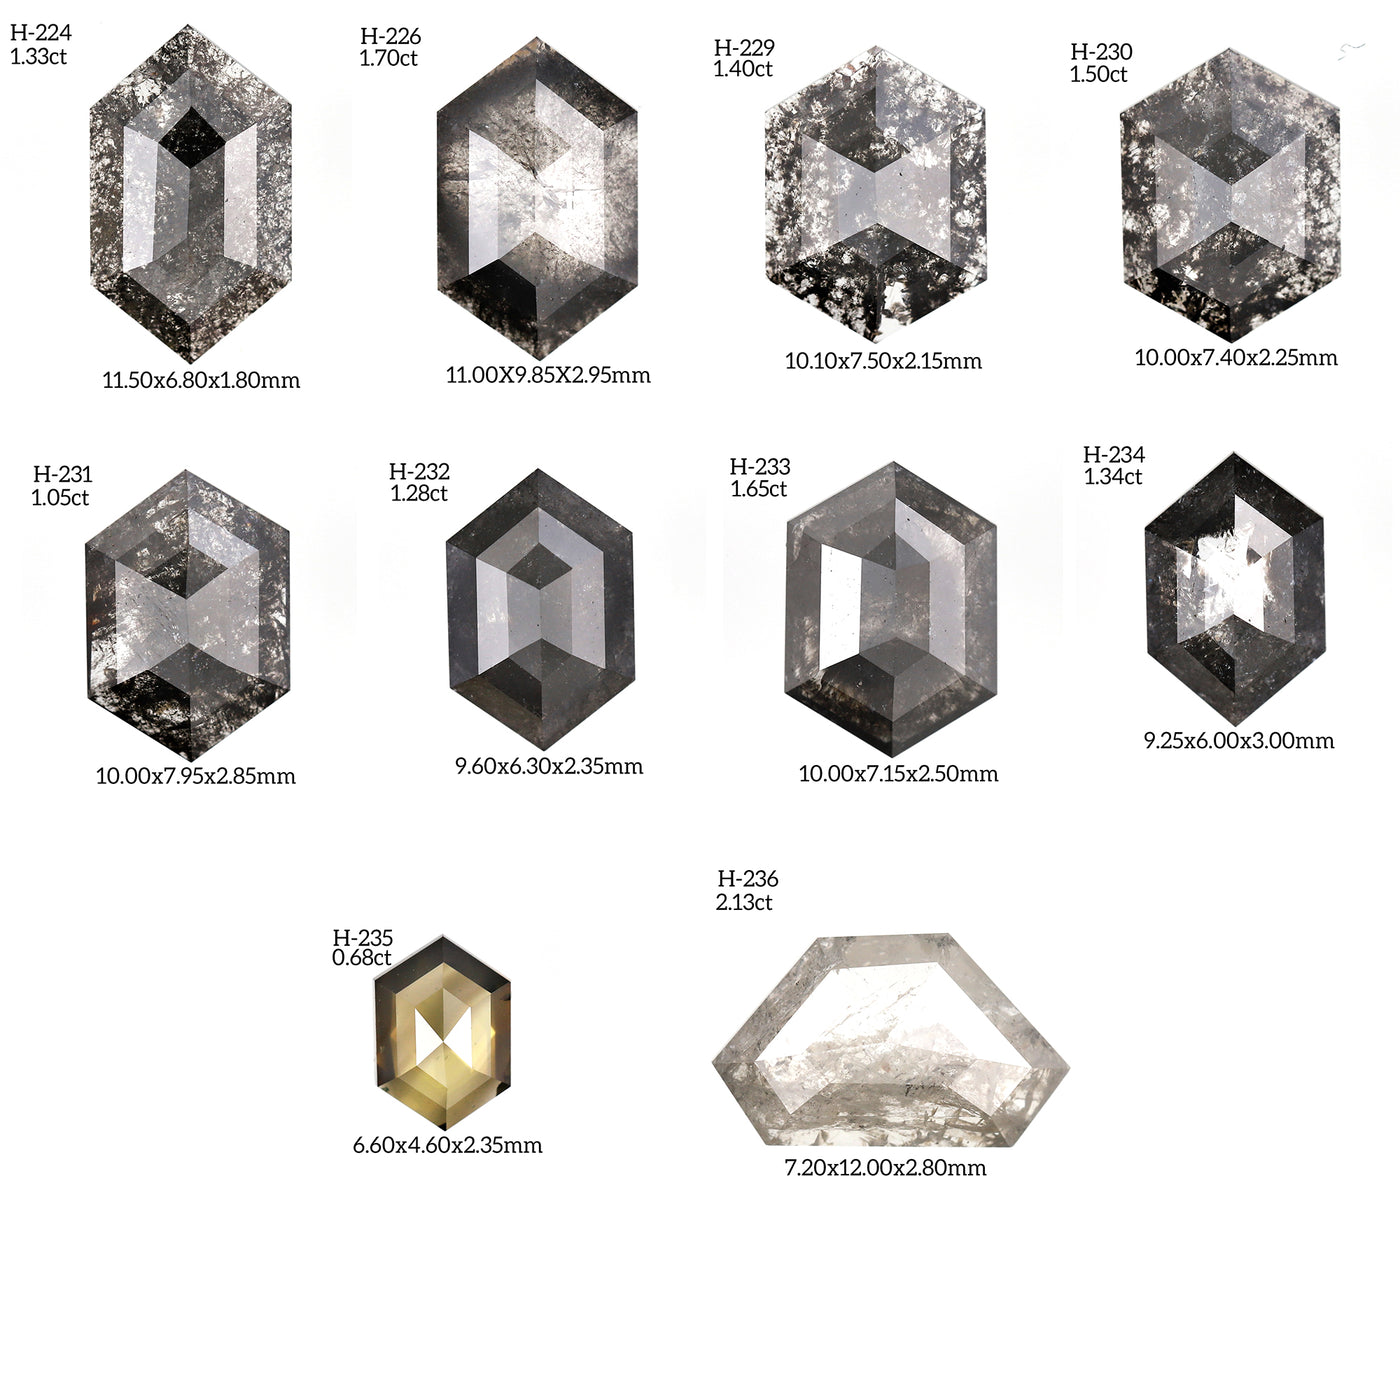 H232 - Salt and pepper hexagon diamond